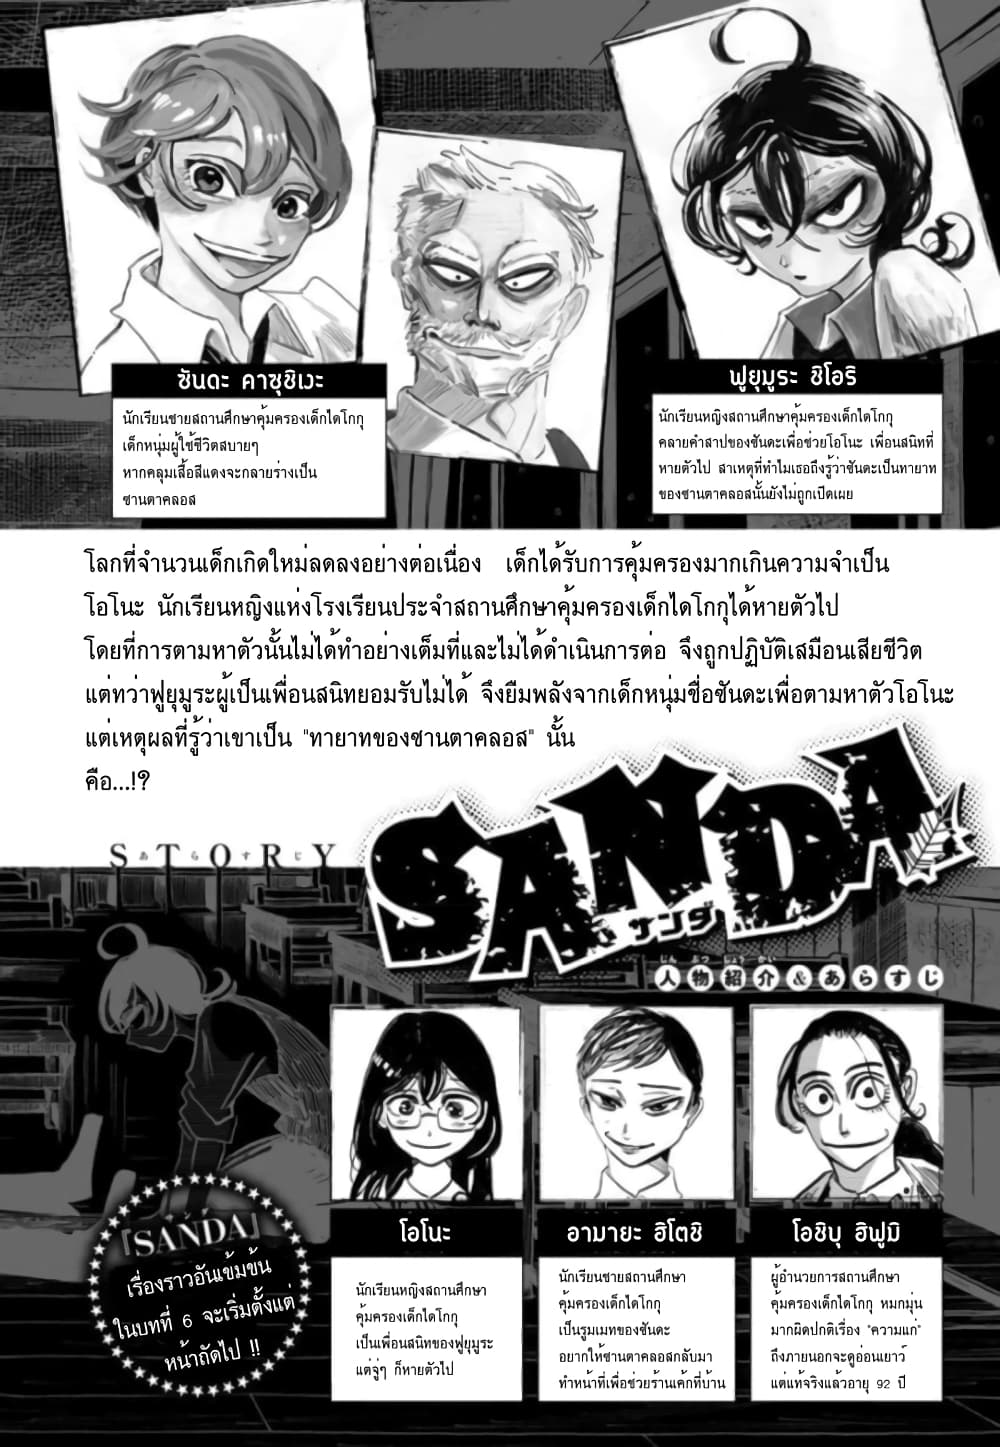 Sanda 6 (1)